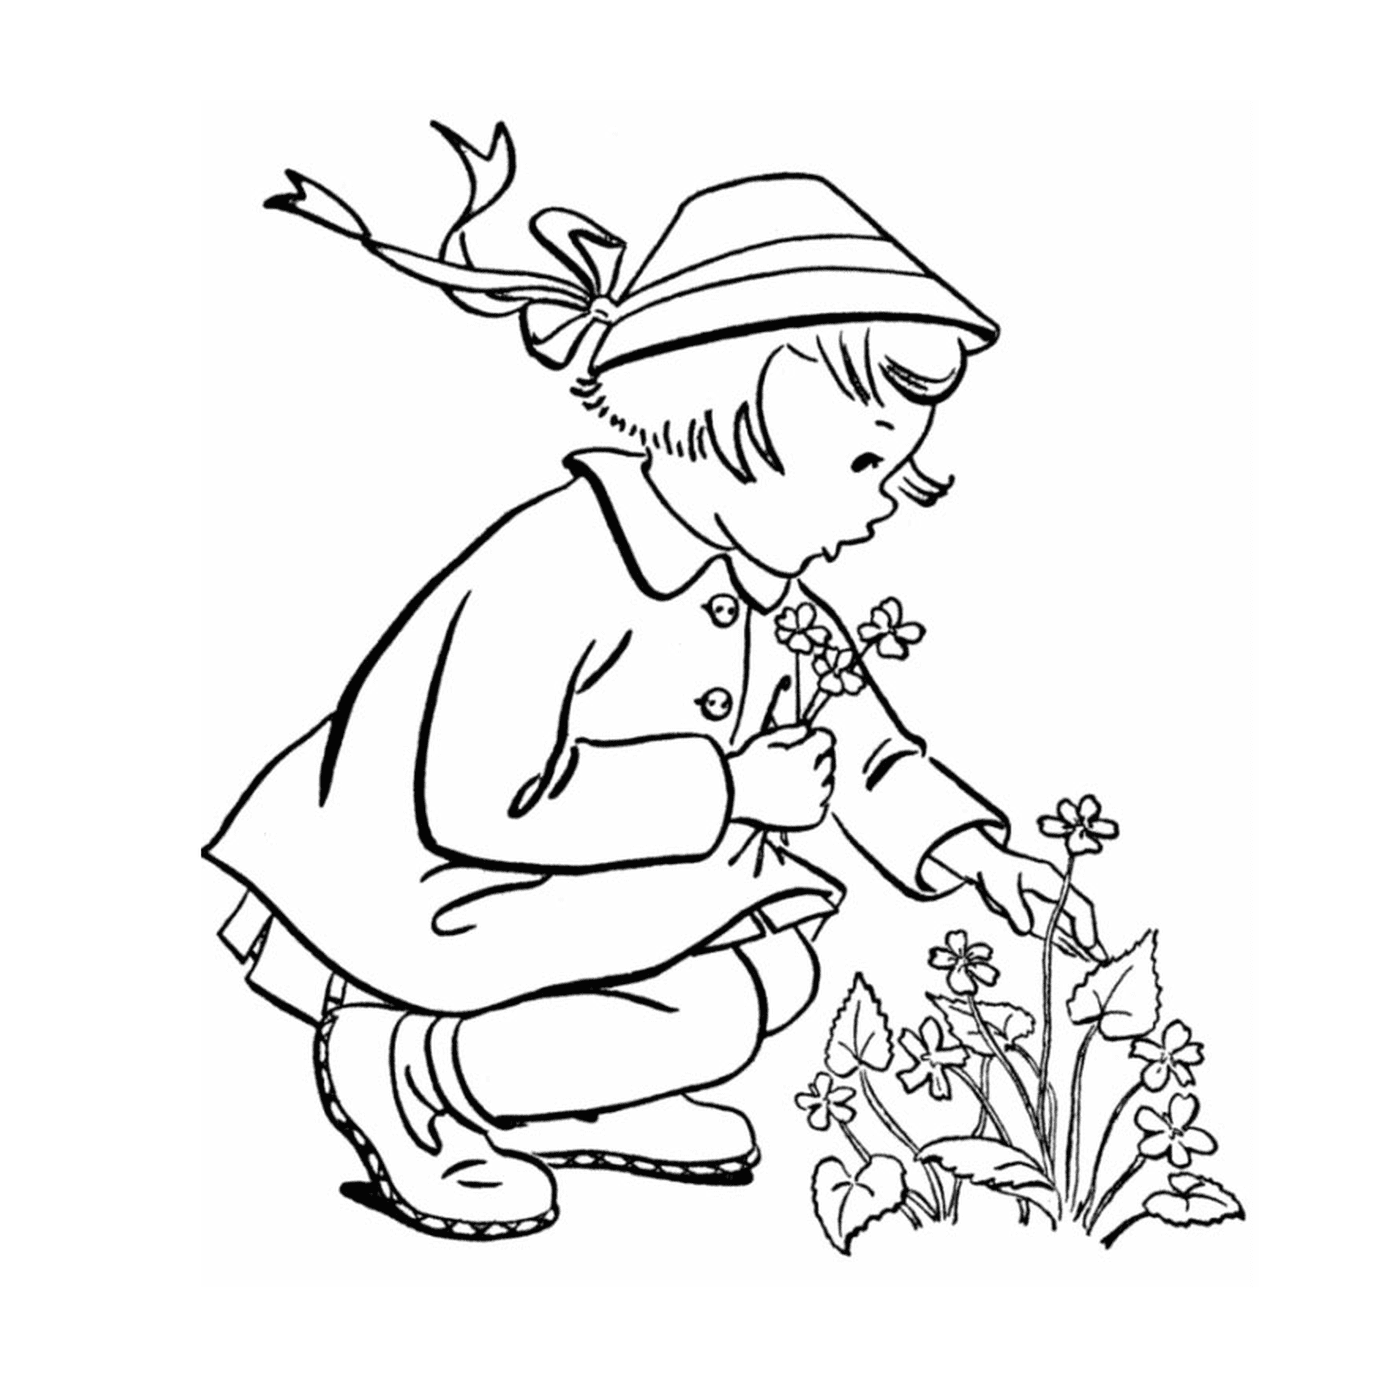  Una bambina inginocchiata per piantare un fiore 